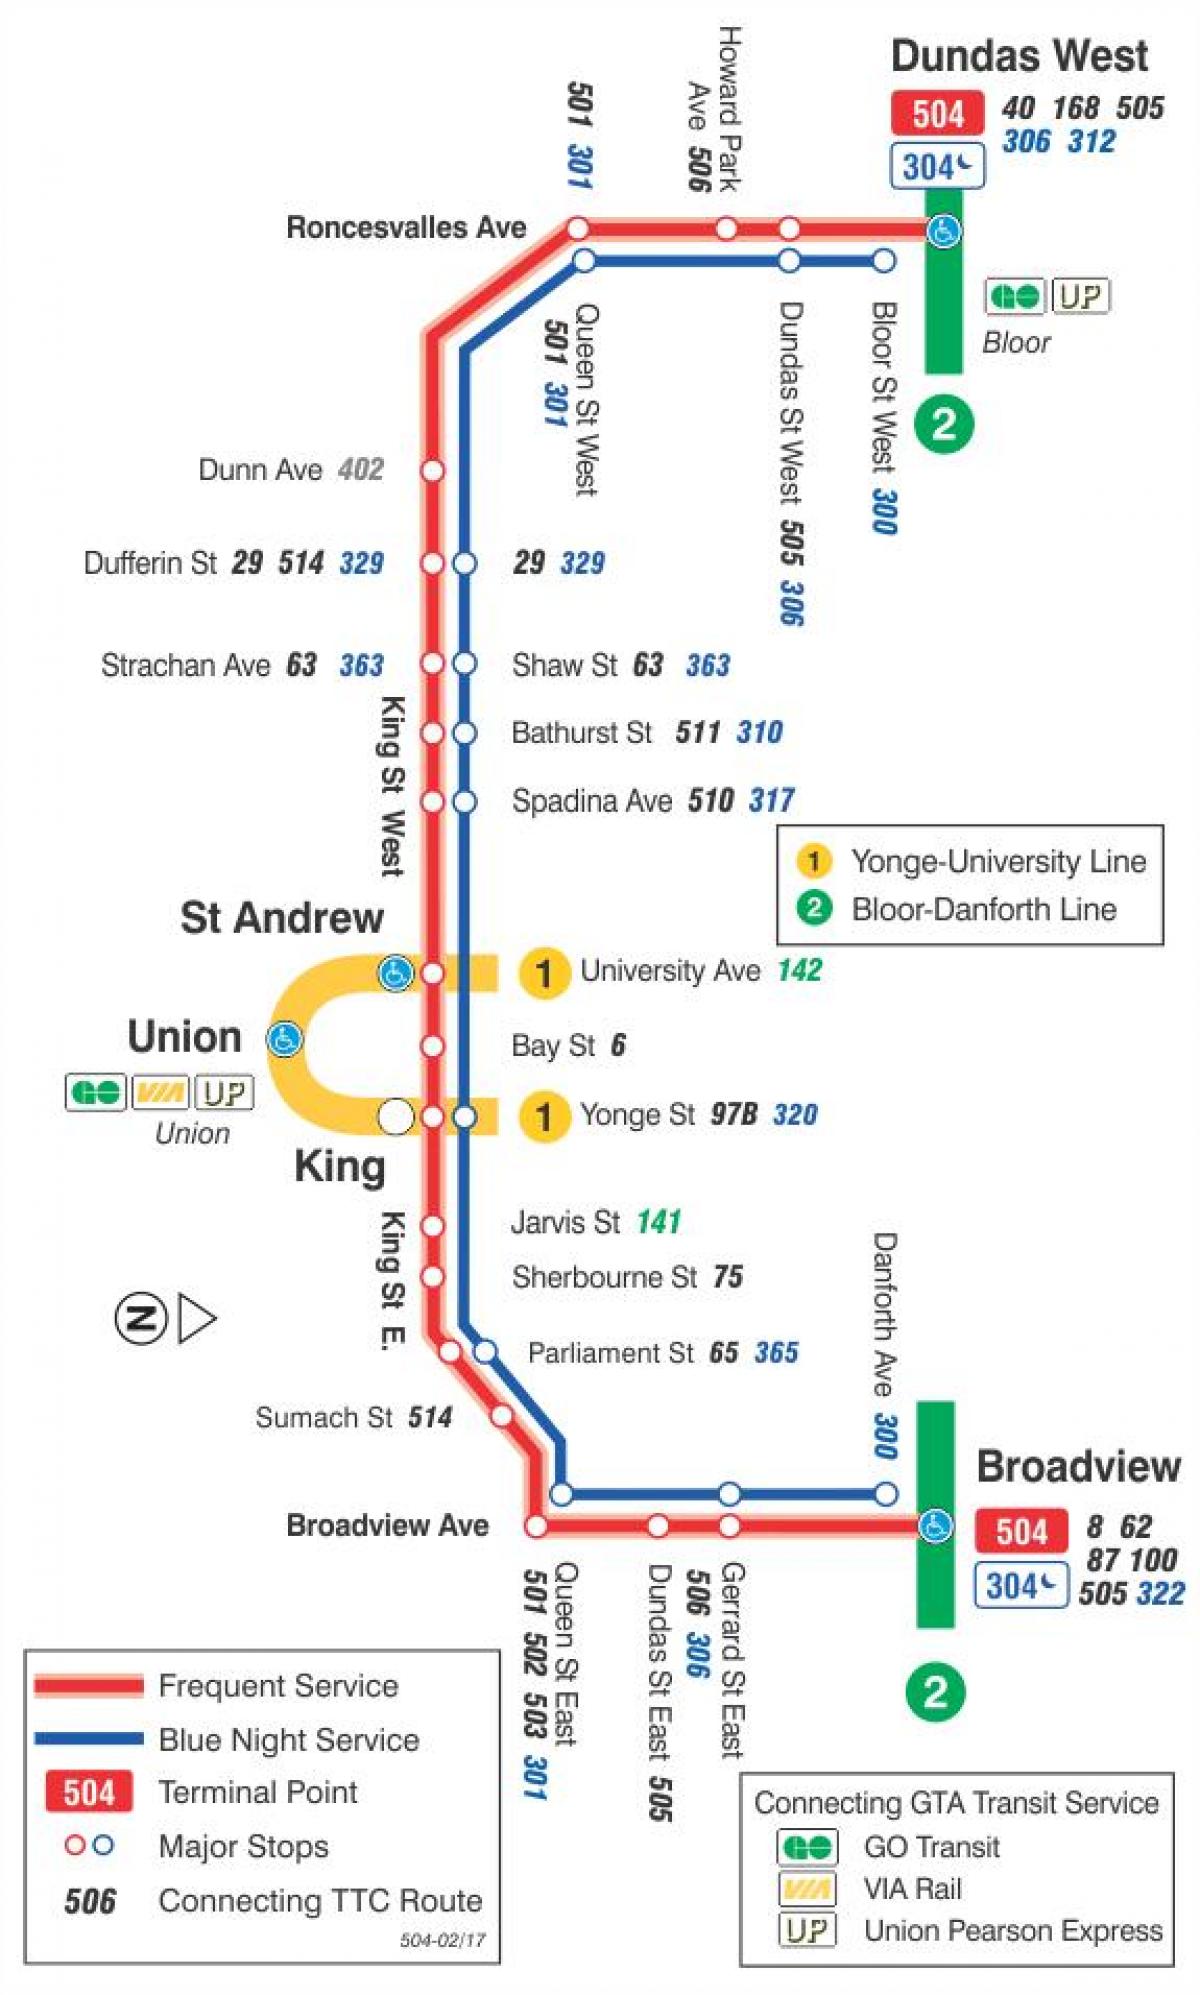 La mappa dei tram linea 504 Re